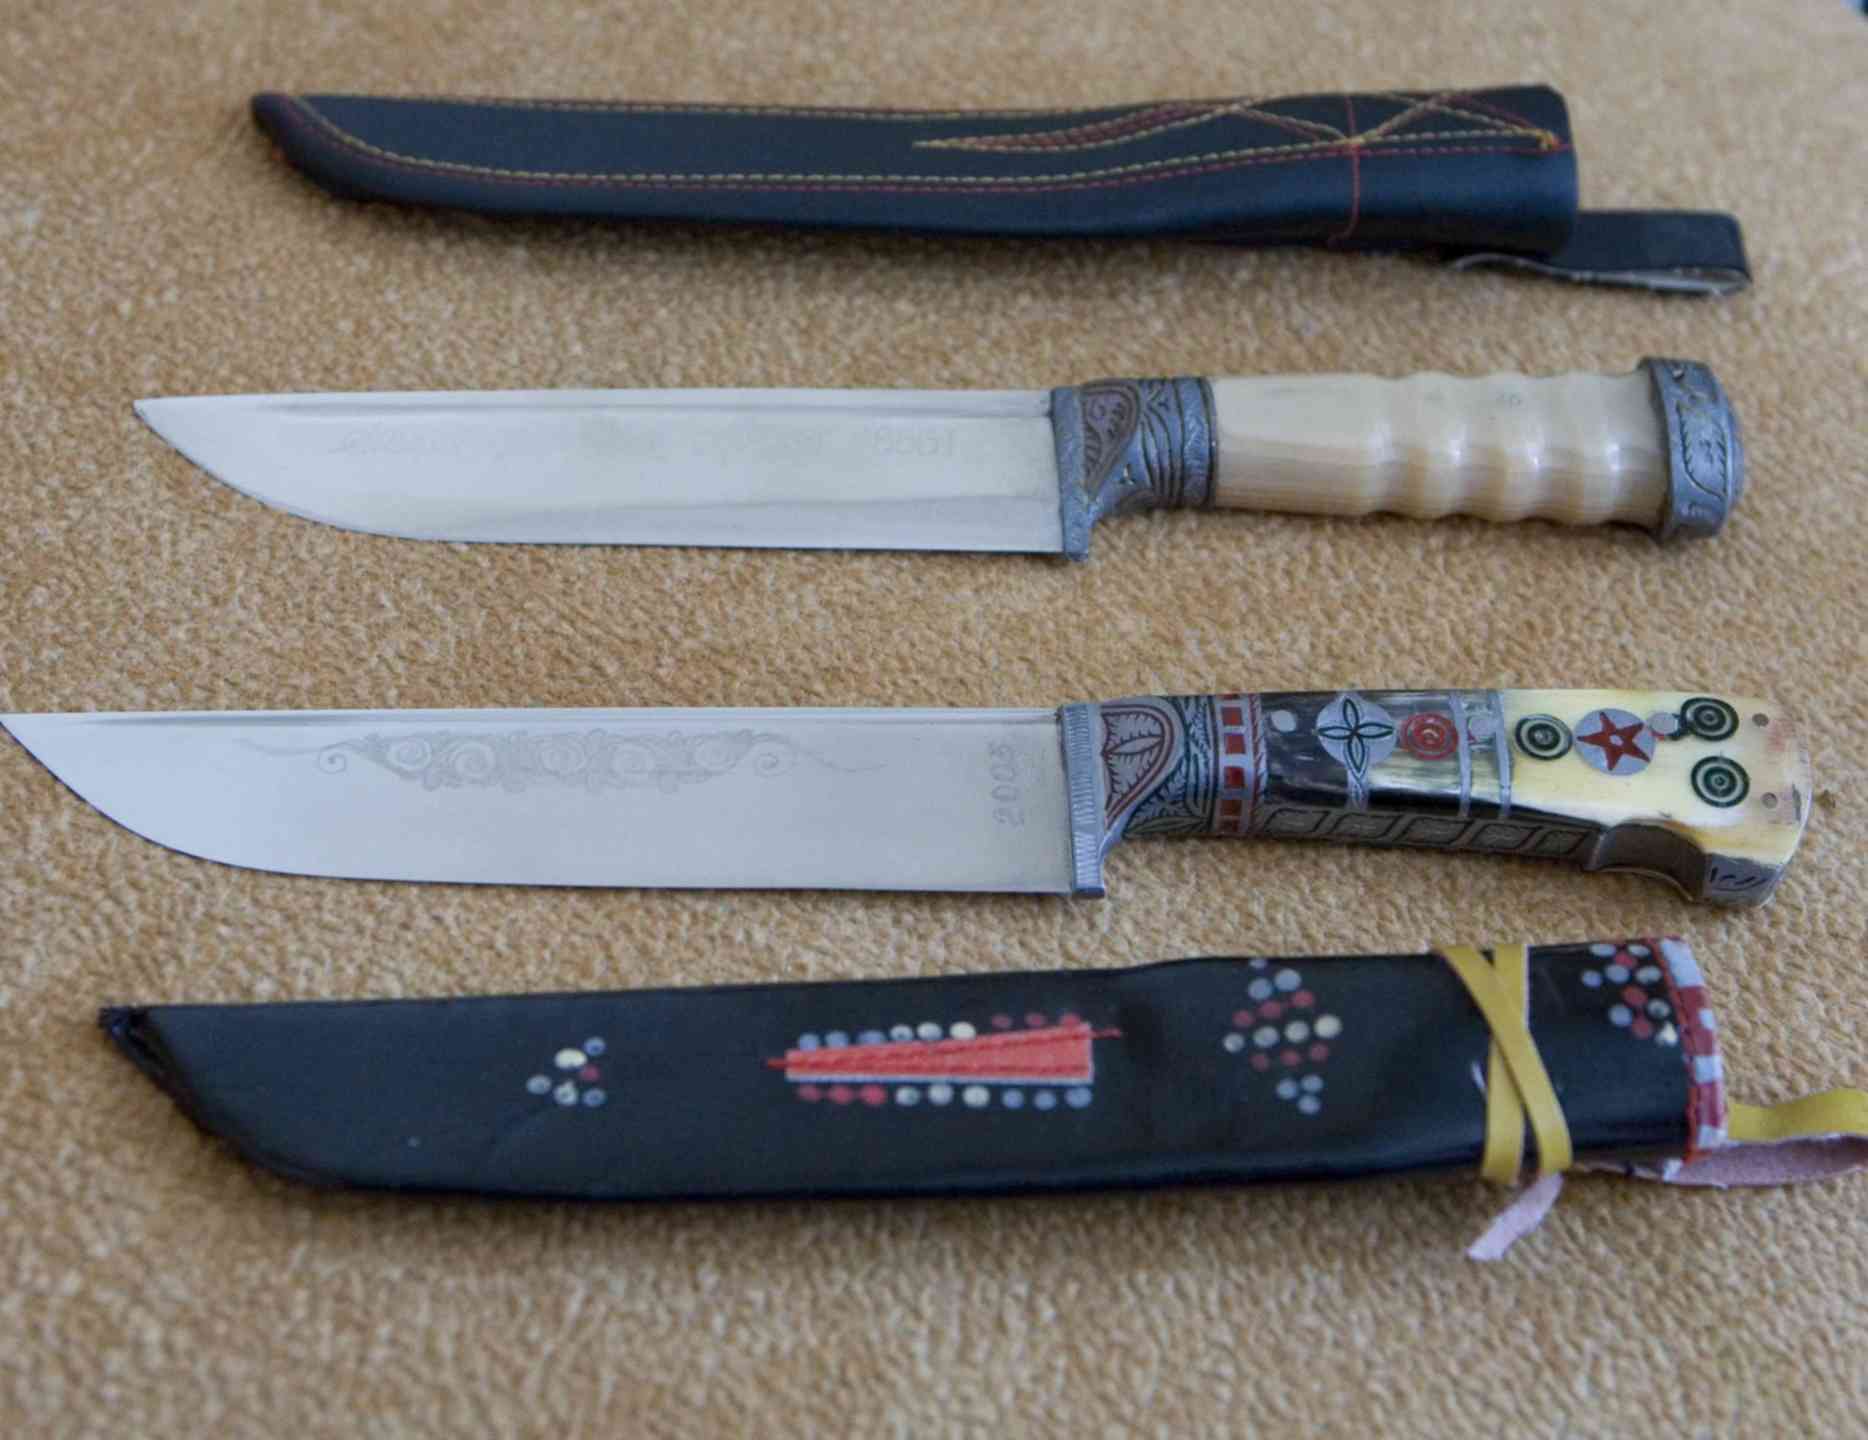 Таджикский нож. Таджикский нож корд. Таджикский нож корд m390. Корд нож Афганский. Корд нож, Восточно-Европейский.